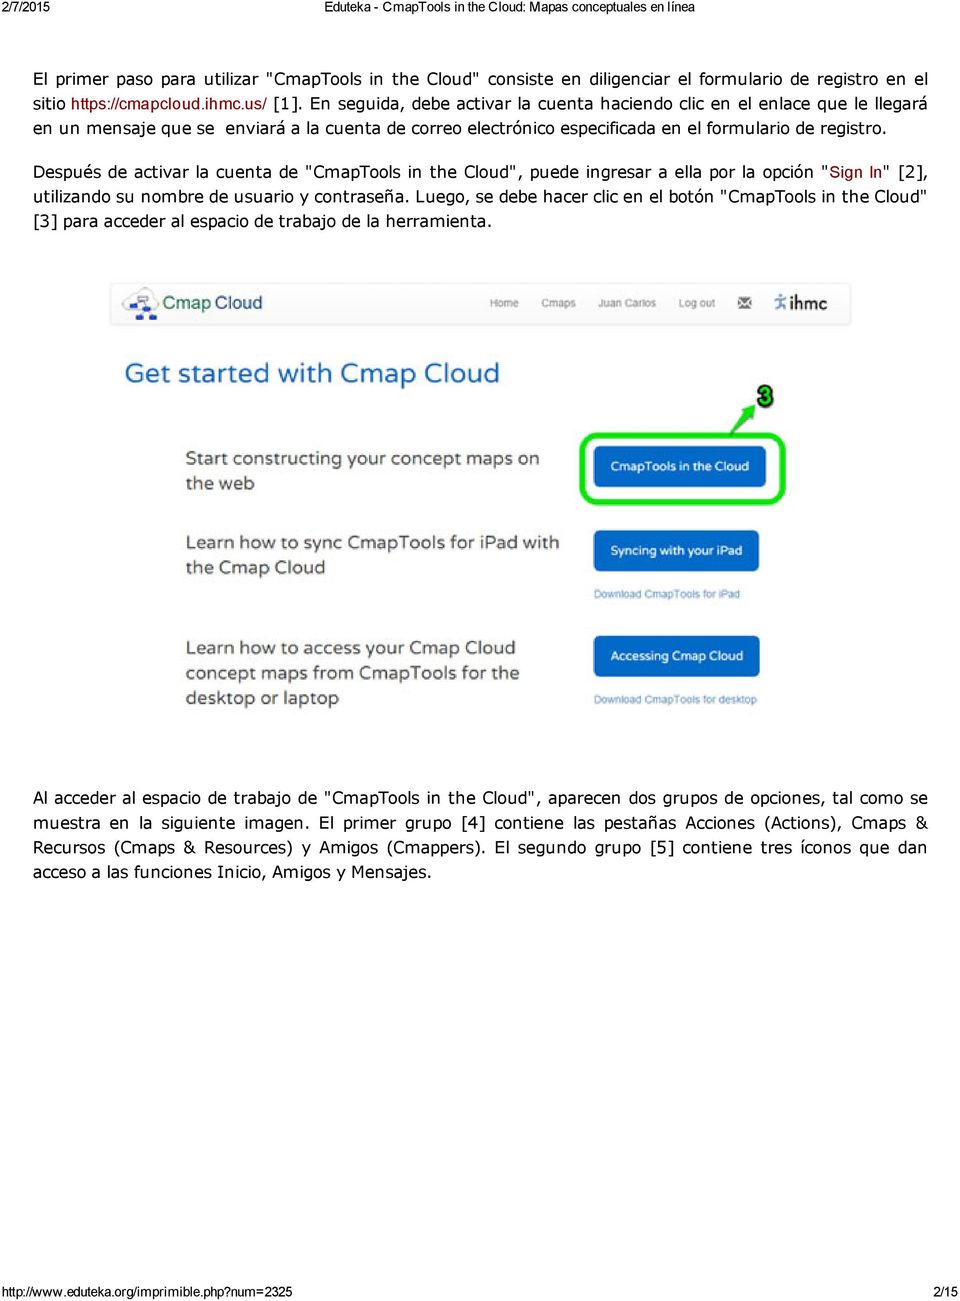 Después de activar la cuenta de "CmapTools in the Cloud", puede ingresar a ella por la opción "Sign In" [2], utilizando su nombre de usuario y contraseña.